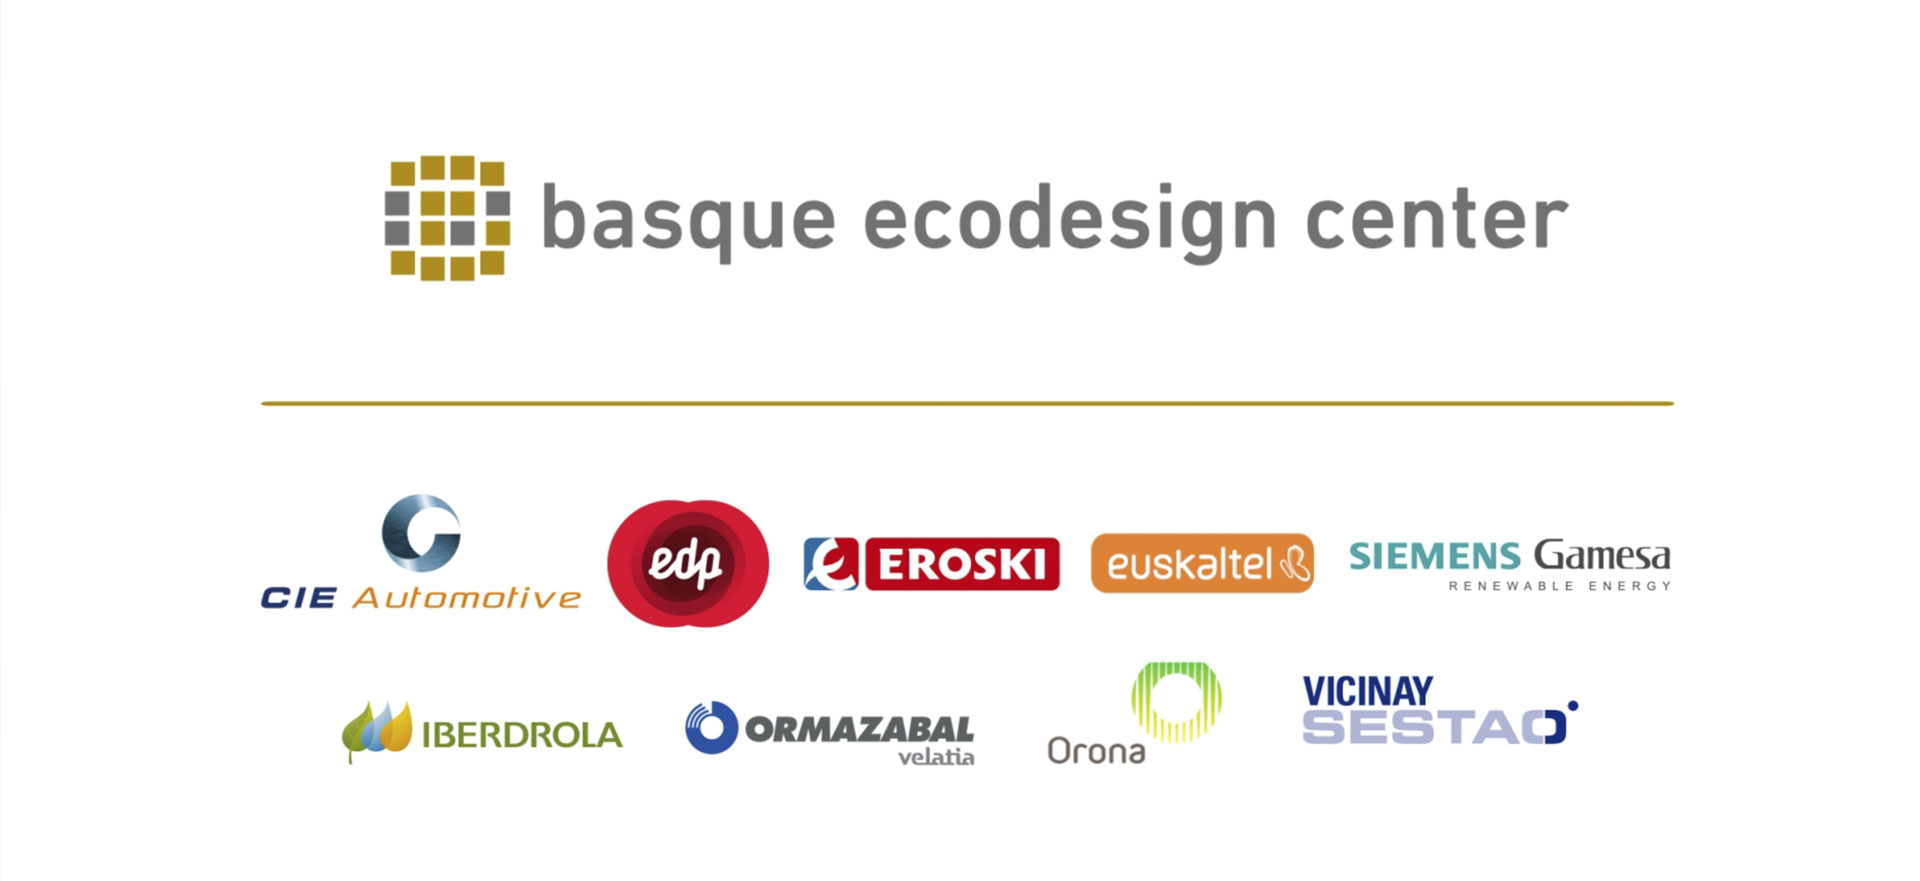 Video Basque Ecodesign Center